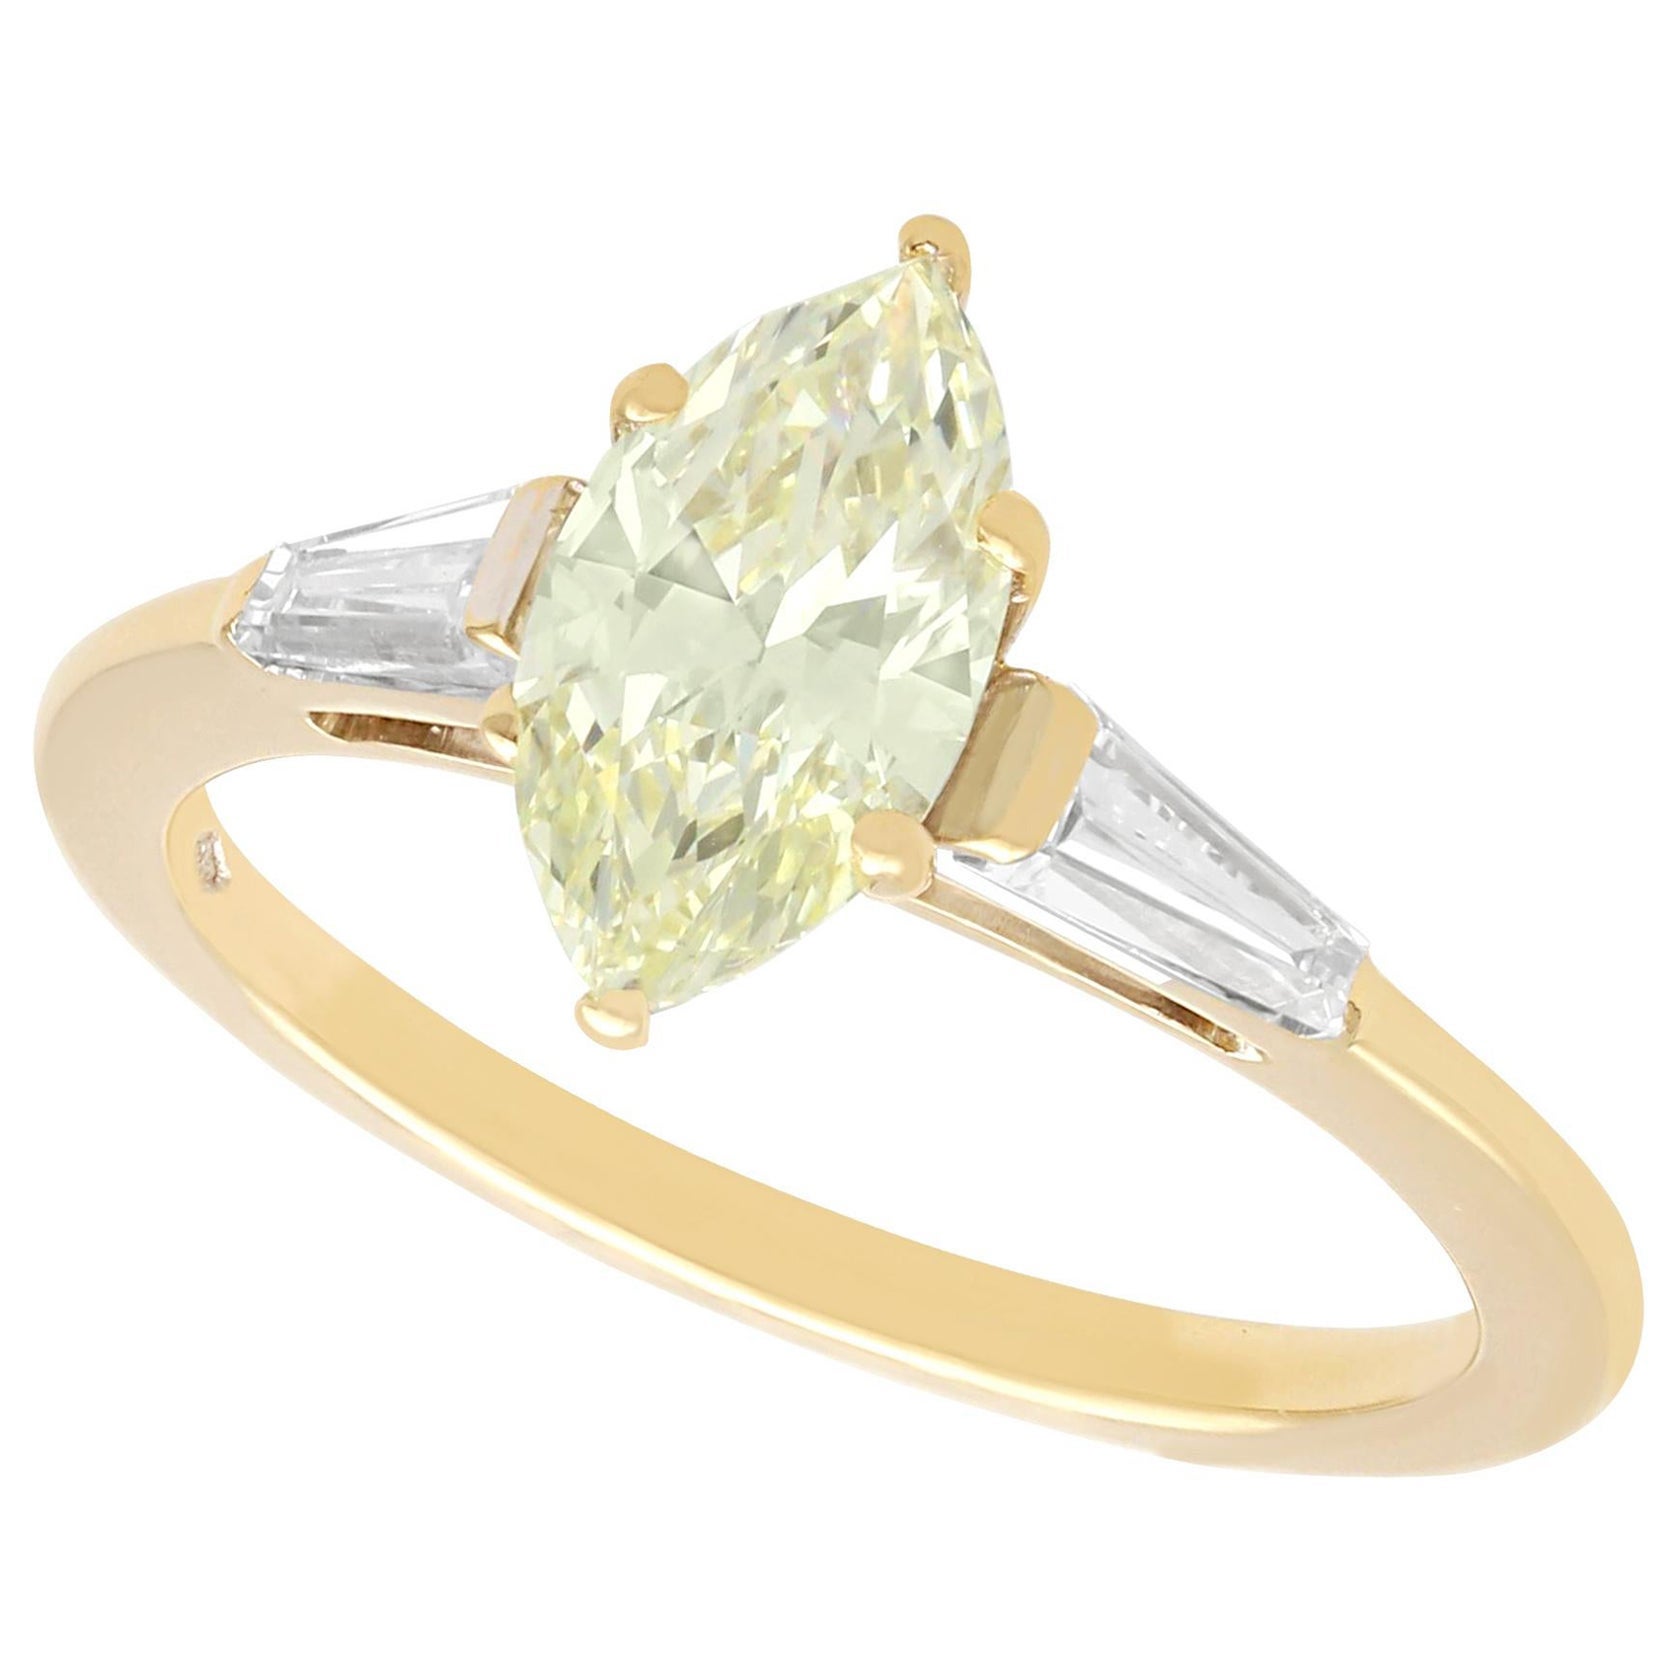 Bague solitaire en or jaune et diamant certifié GIA de 1,36 carat de couleur jaune clair